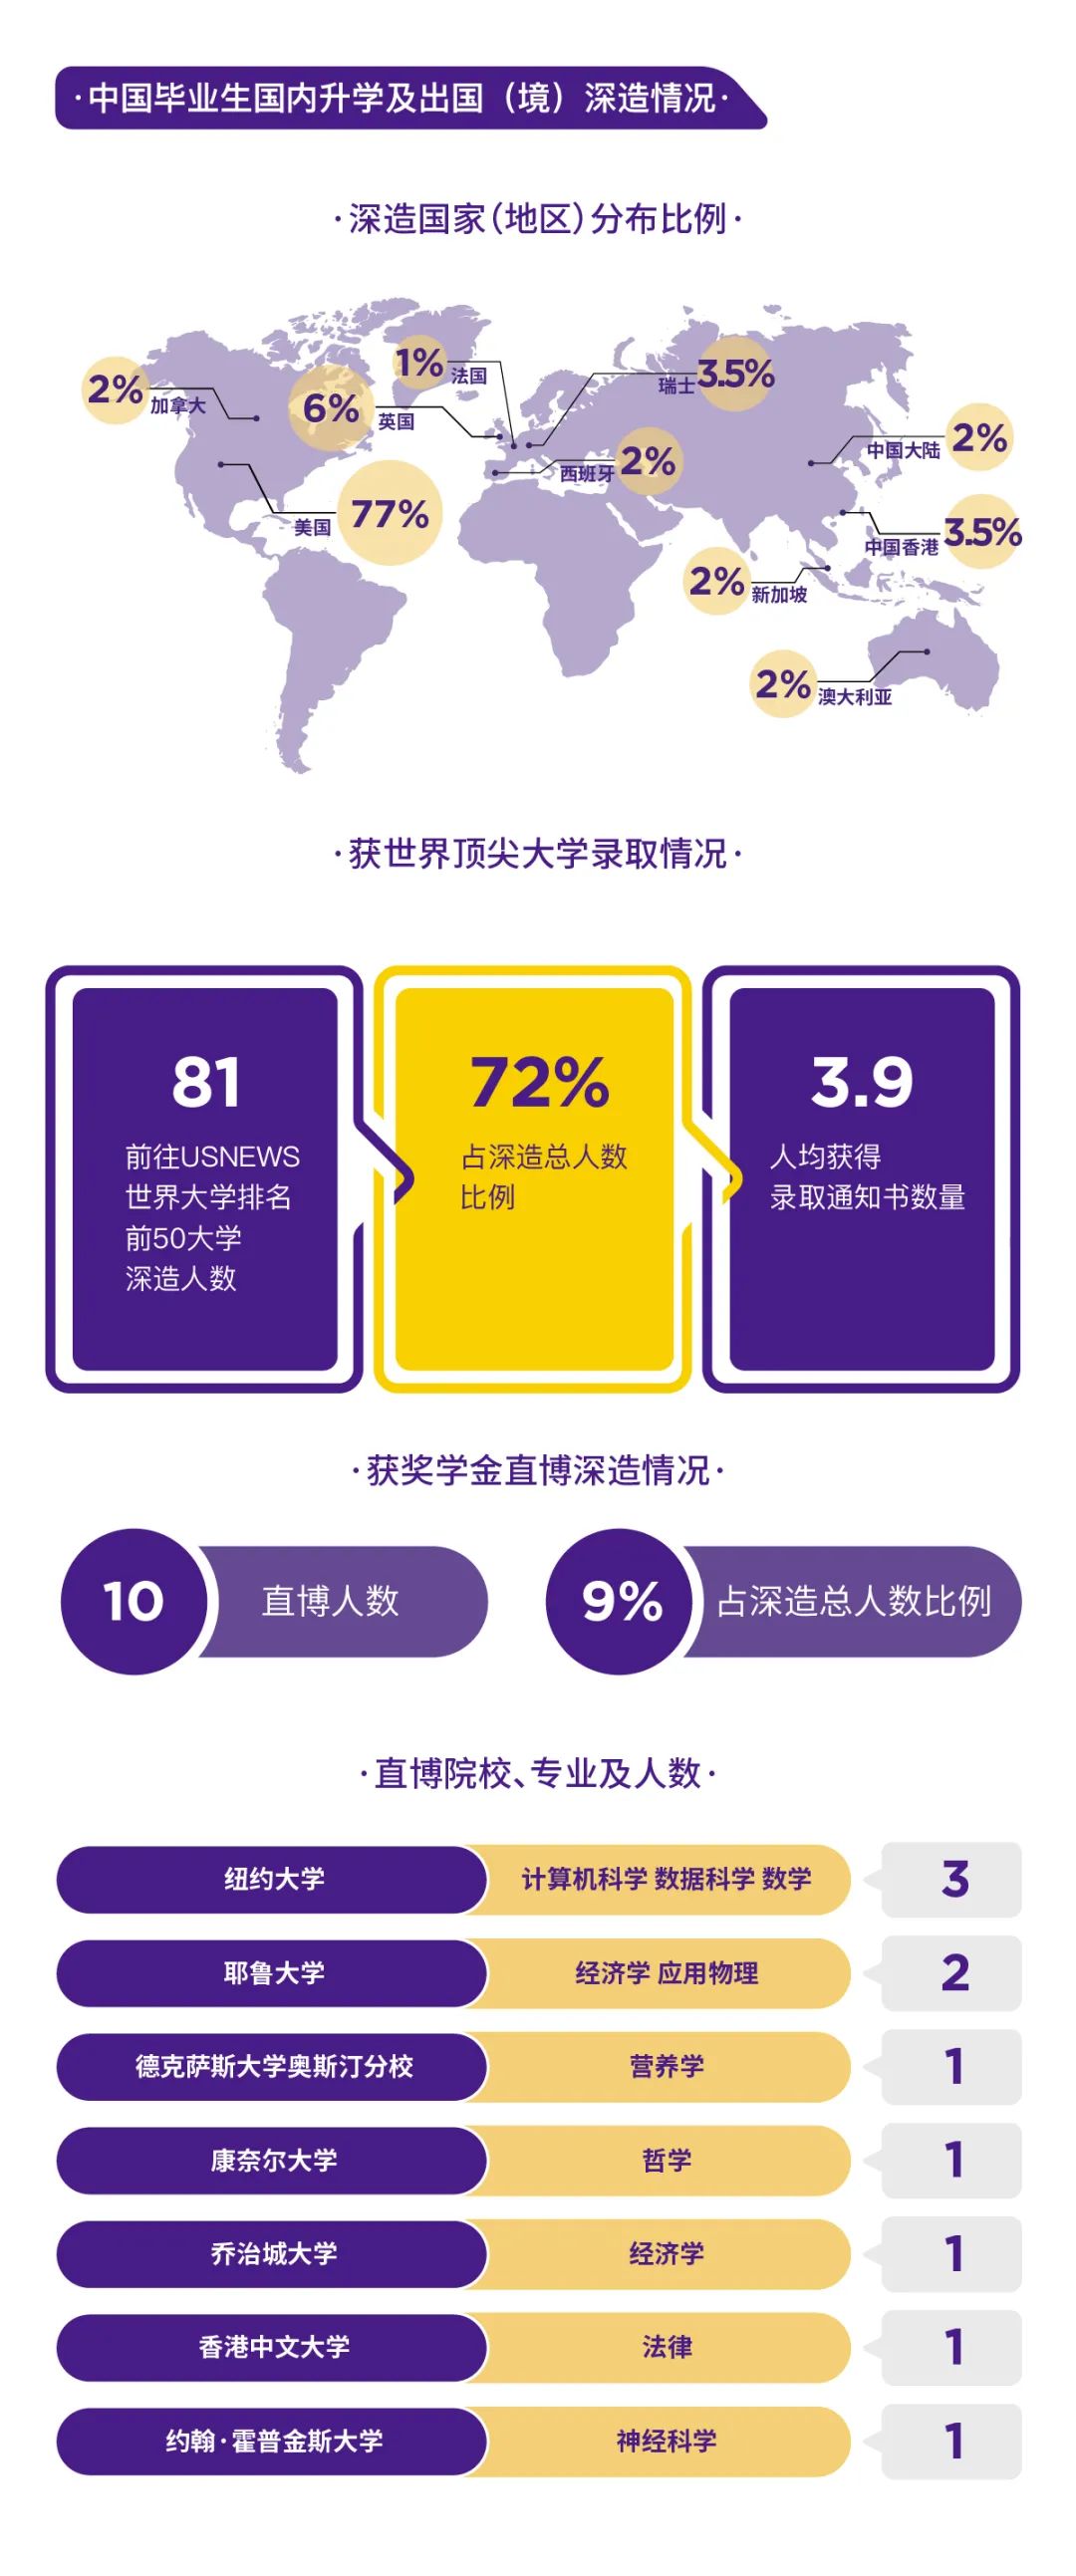 上海纽约大学发布2021届本科毕业生就业质量报告